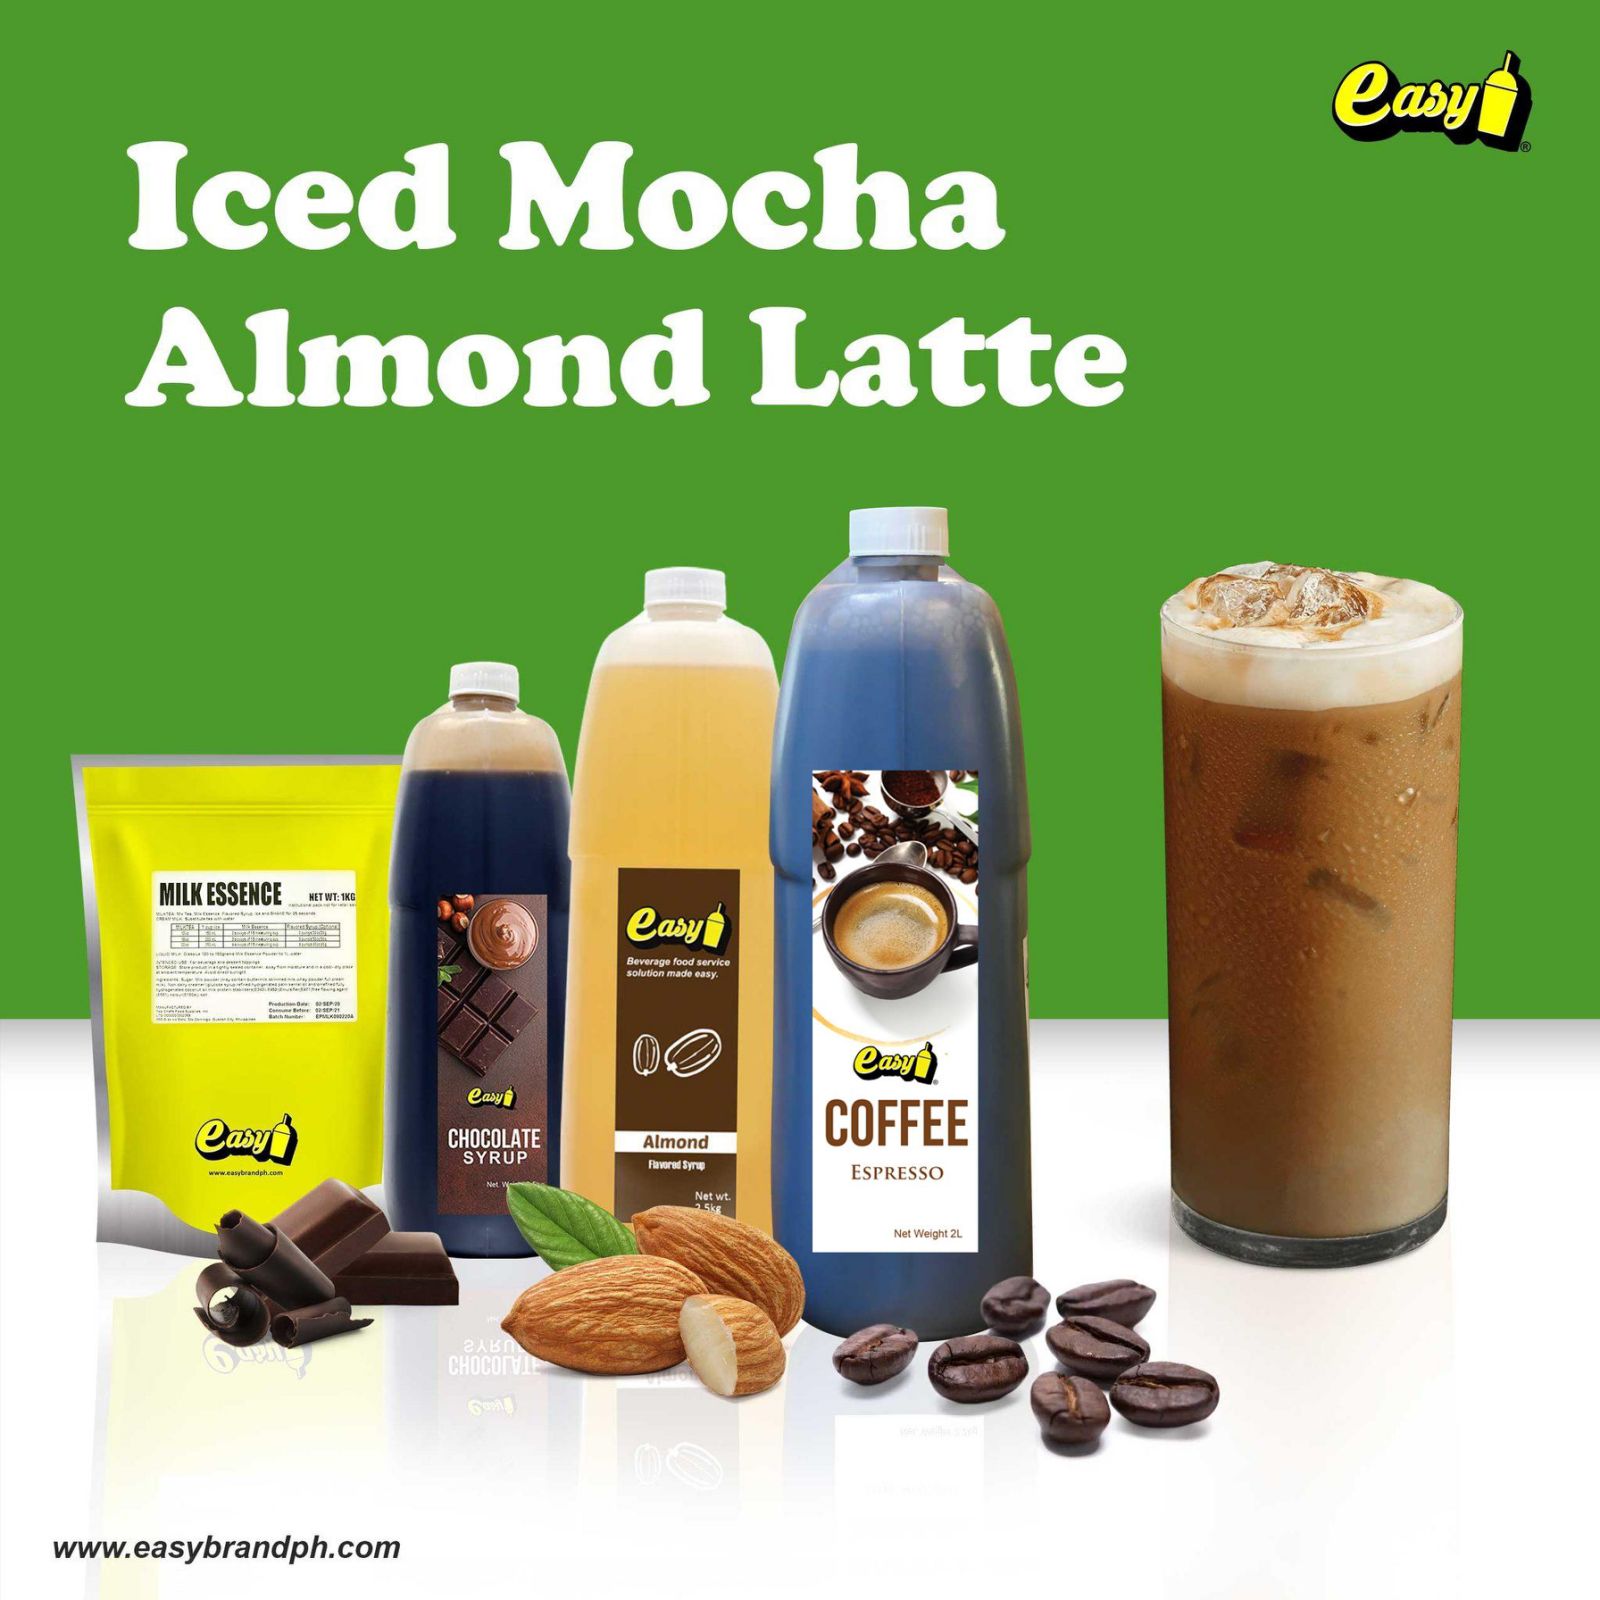 Iced Mocha Almond Latte